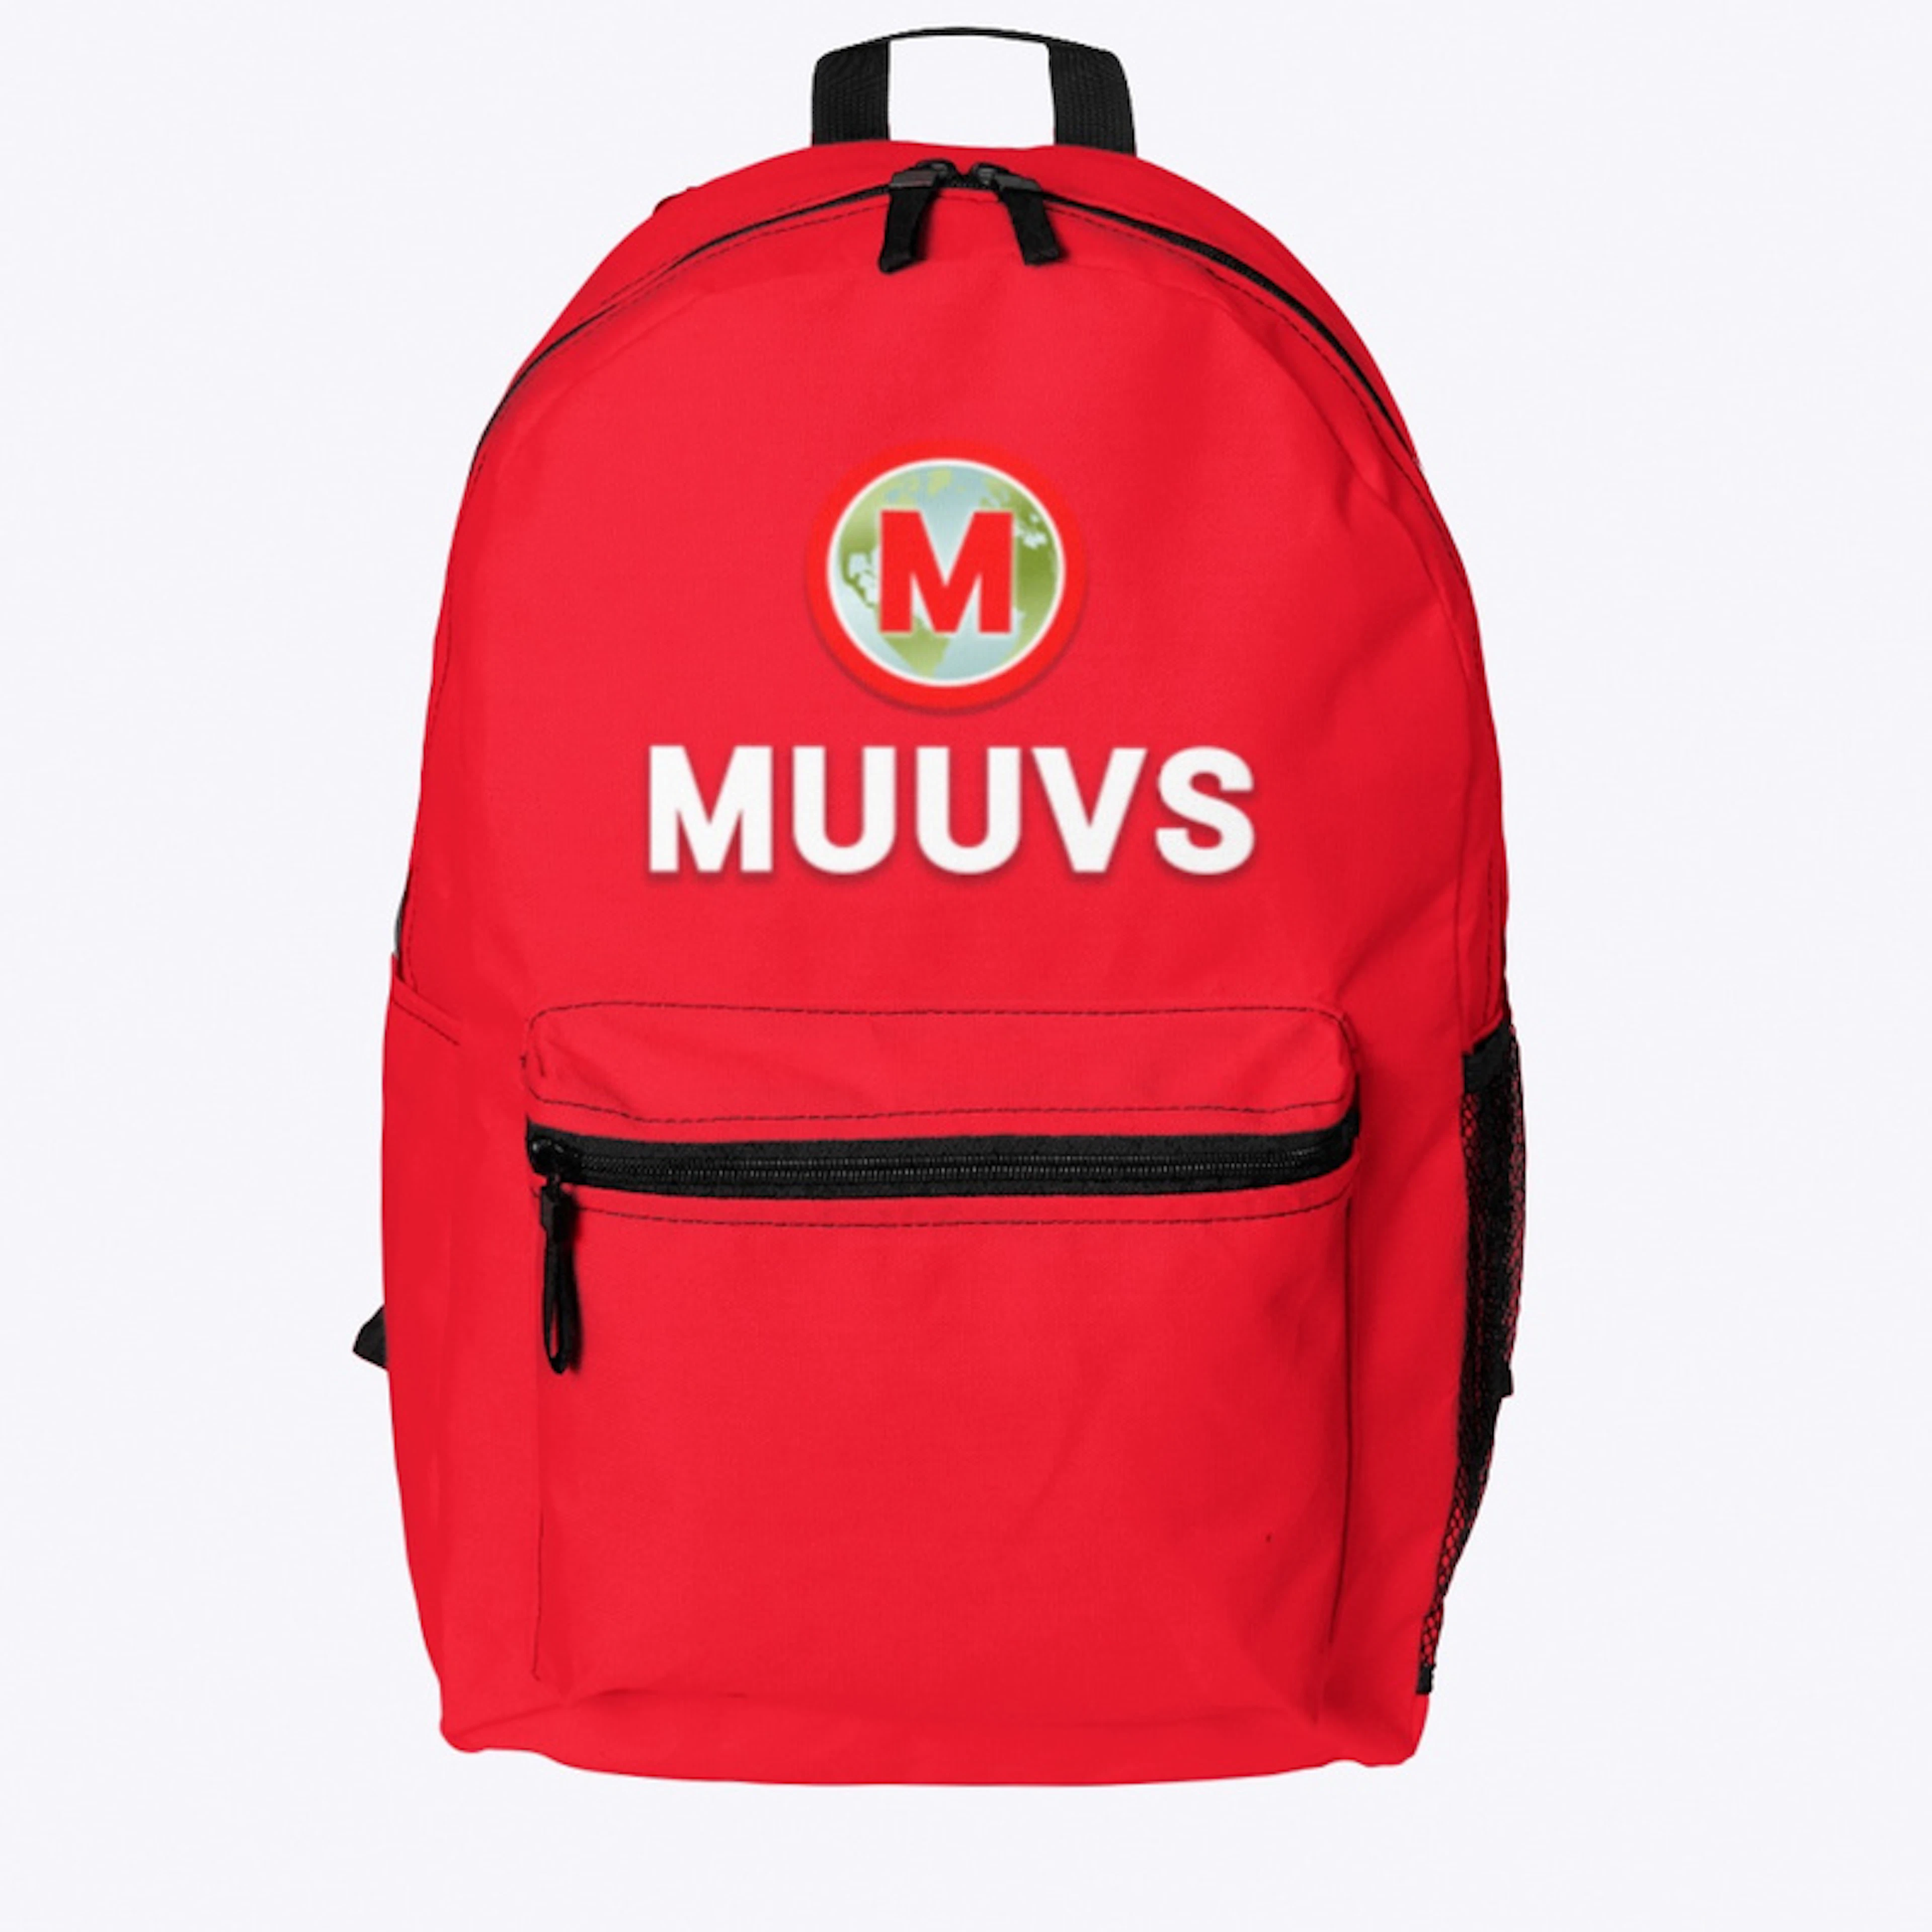 MUUVS Bag